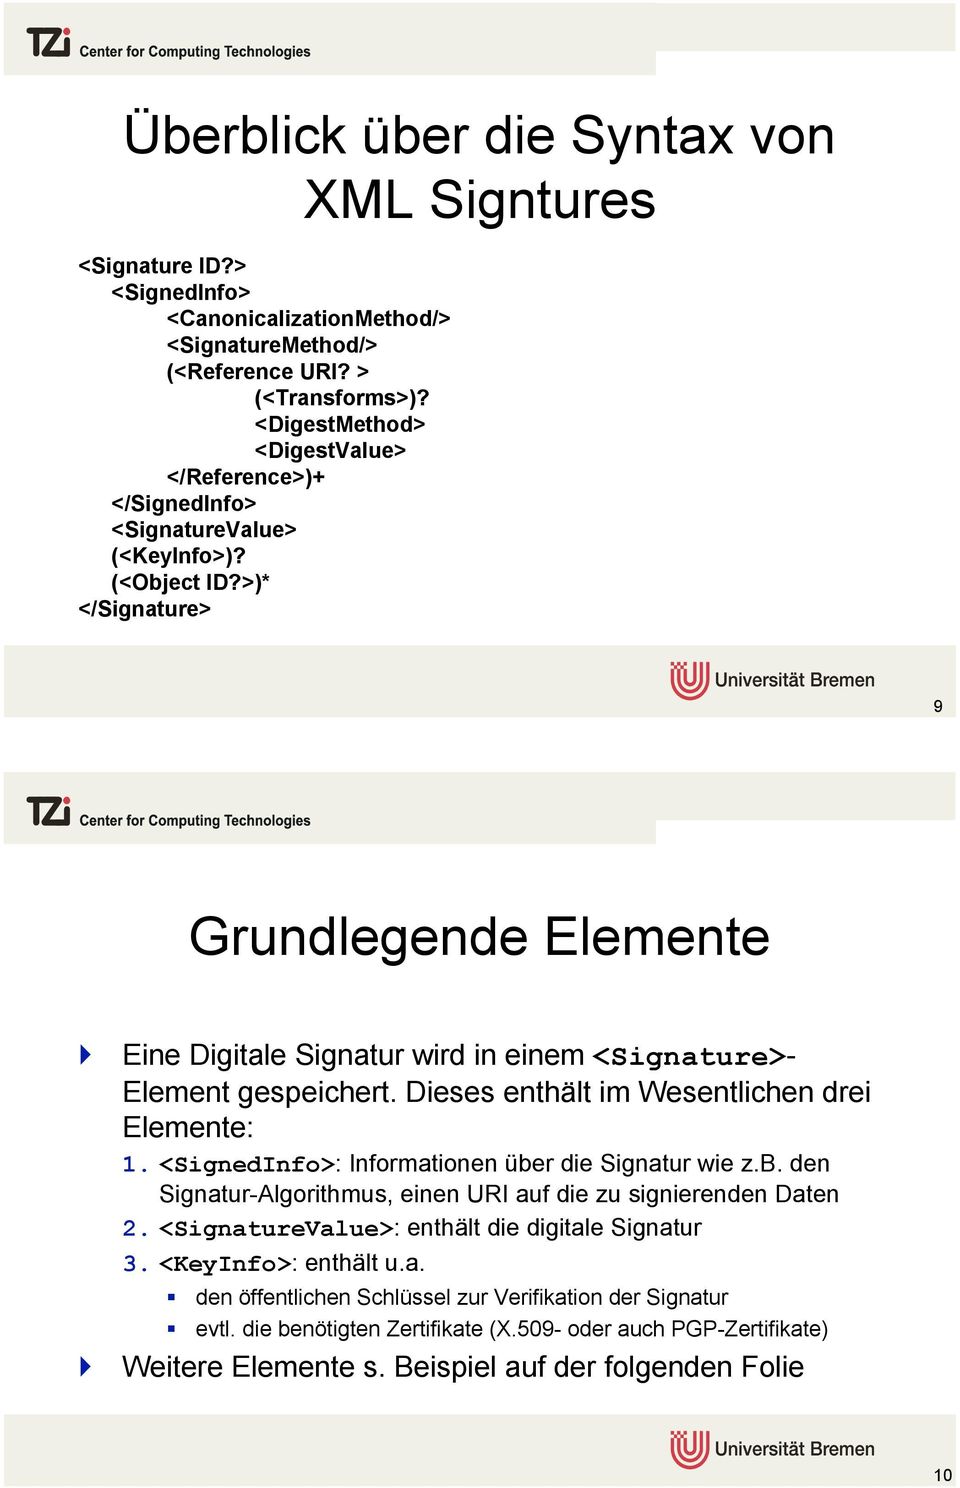 Eine Digitale Signatur wird in einem <Signature>- Element gespeichert. Dieses enthält im Wesentlichen drei Elemente: 1. <SignedInfo>: Informationen übe